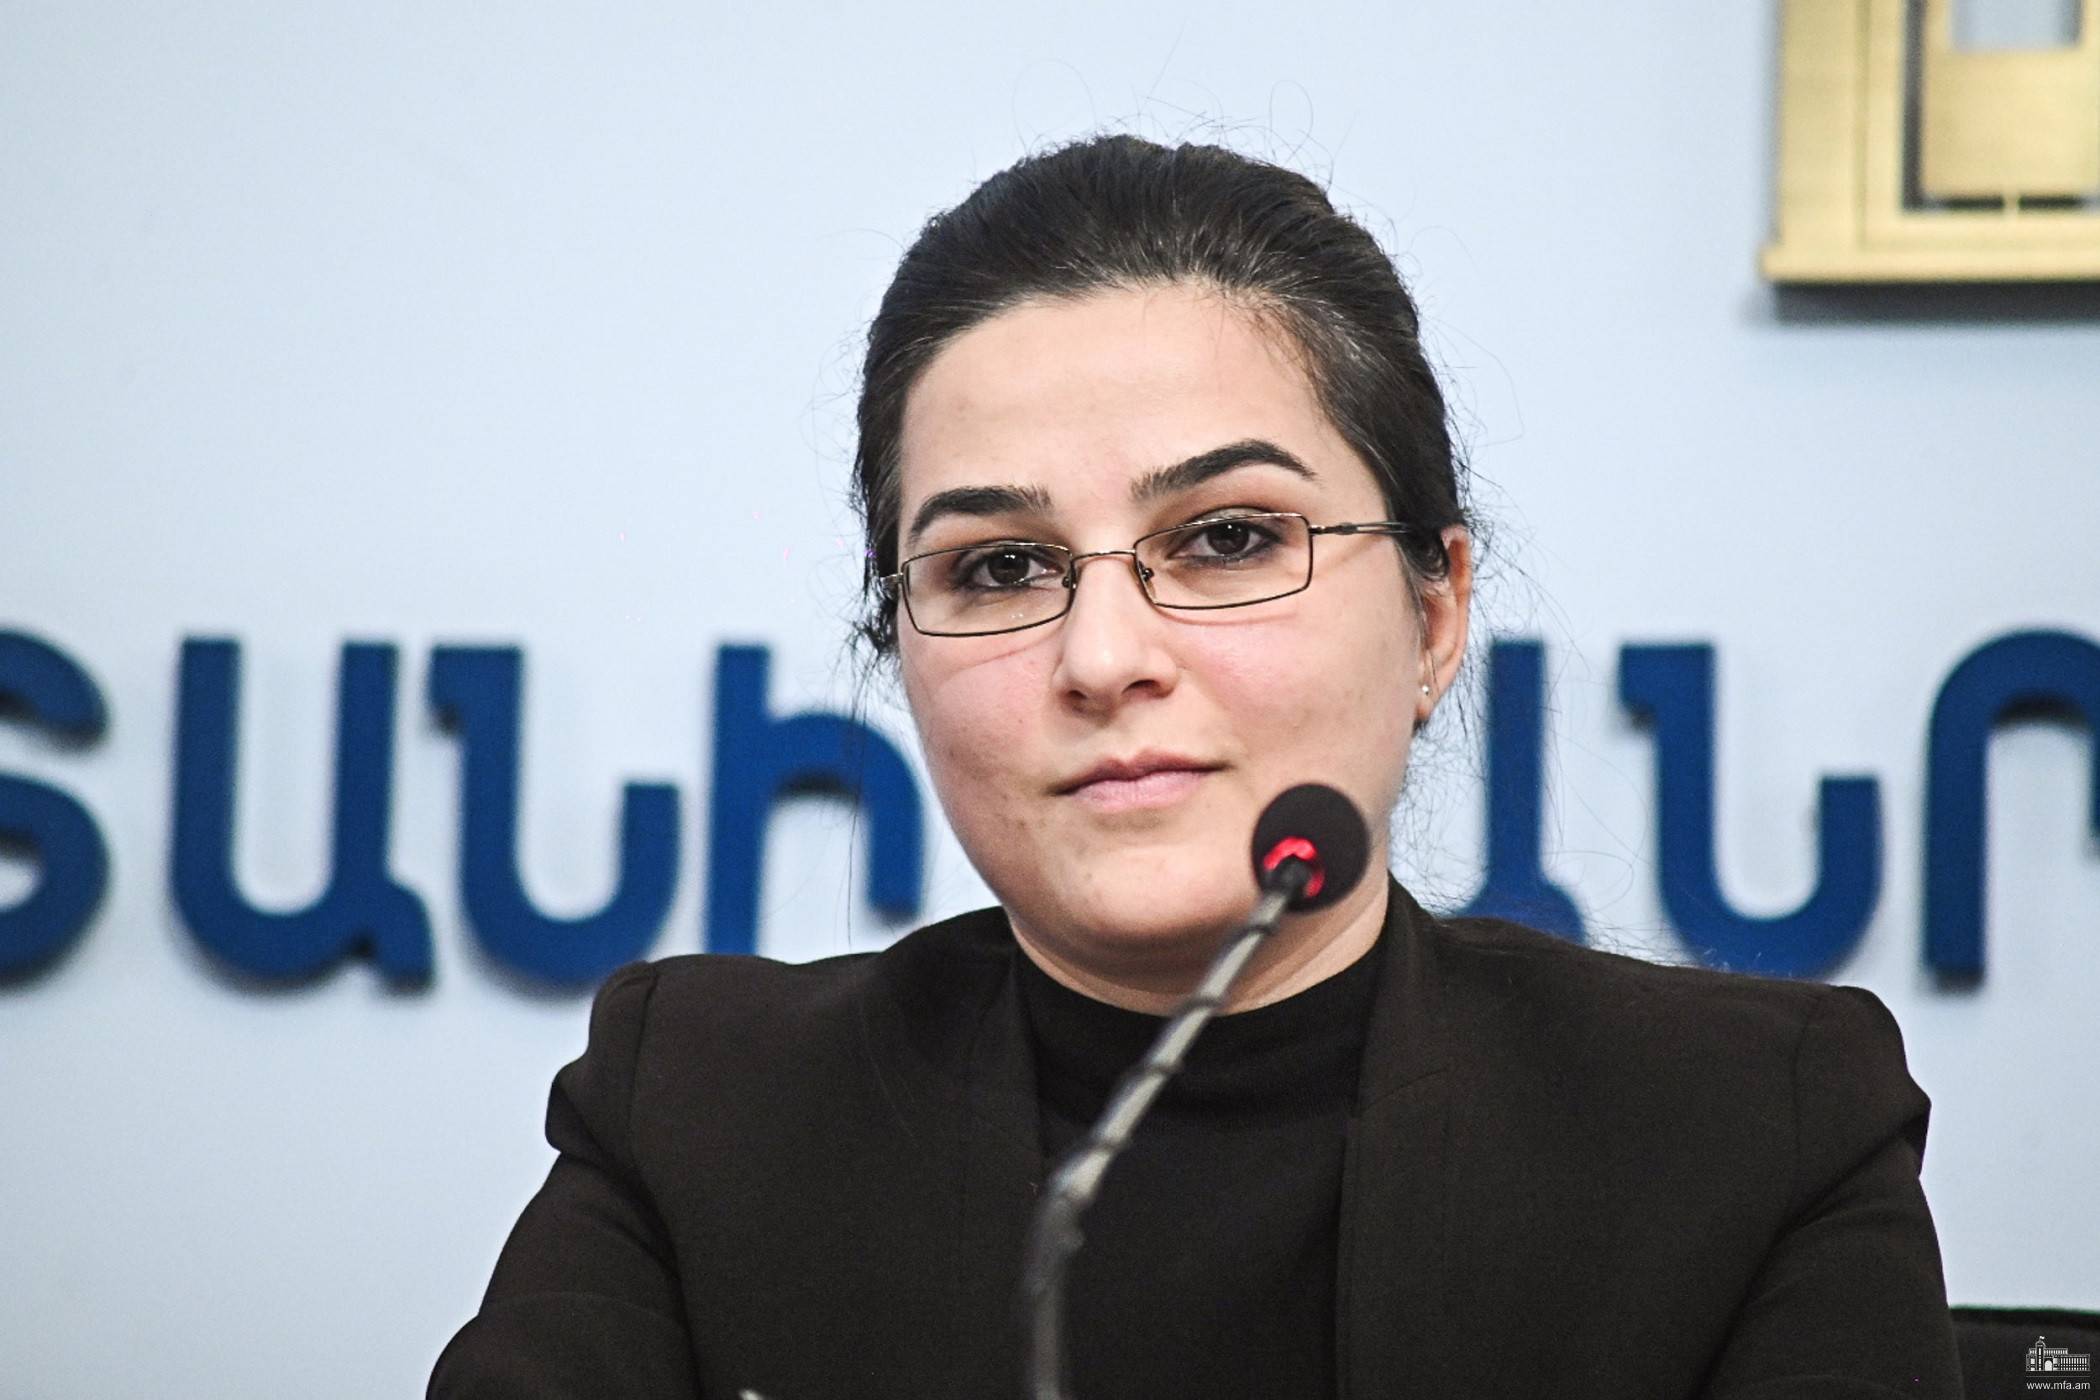 ԱԳՆ մամուլի խոսնակի մեկնաբանությունը Ադրբեջանի նախագահի՝ «ՏԱՍՍ» լրատվական գործակալությանը հարցազրույցում Հայաստանի վերաբերյալ մեկնաբանություններին